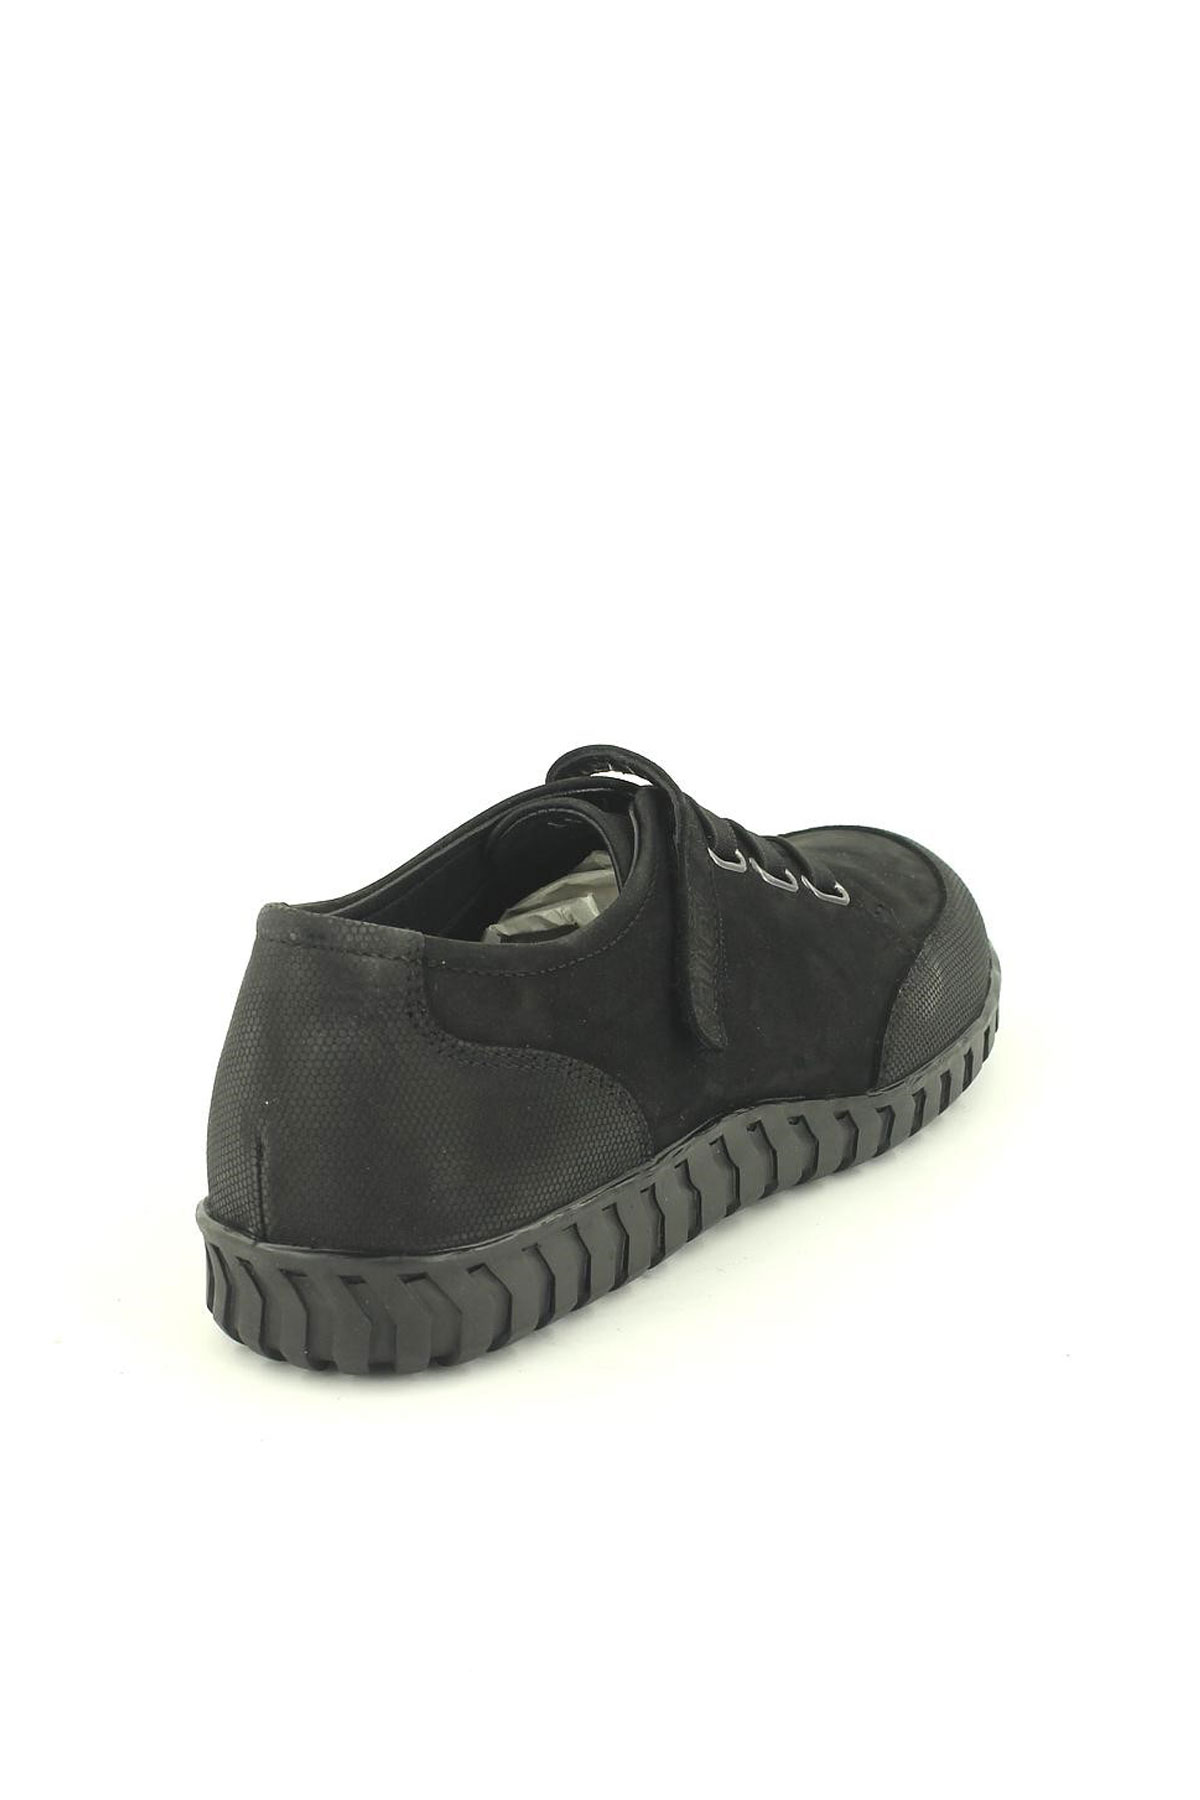 Kadın Comfort Deri Ayakkabı Siyah 2050804K